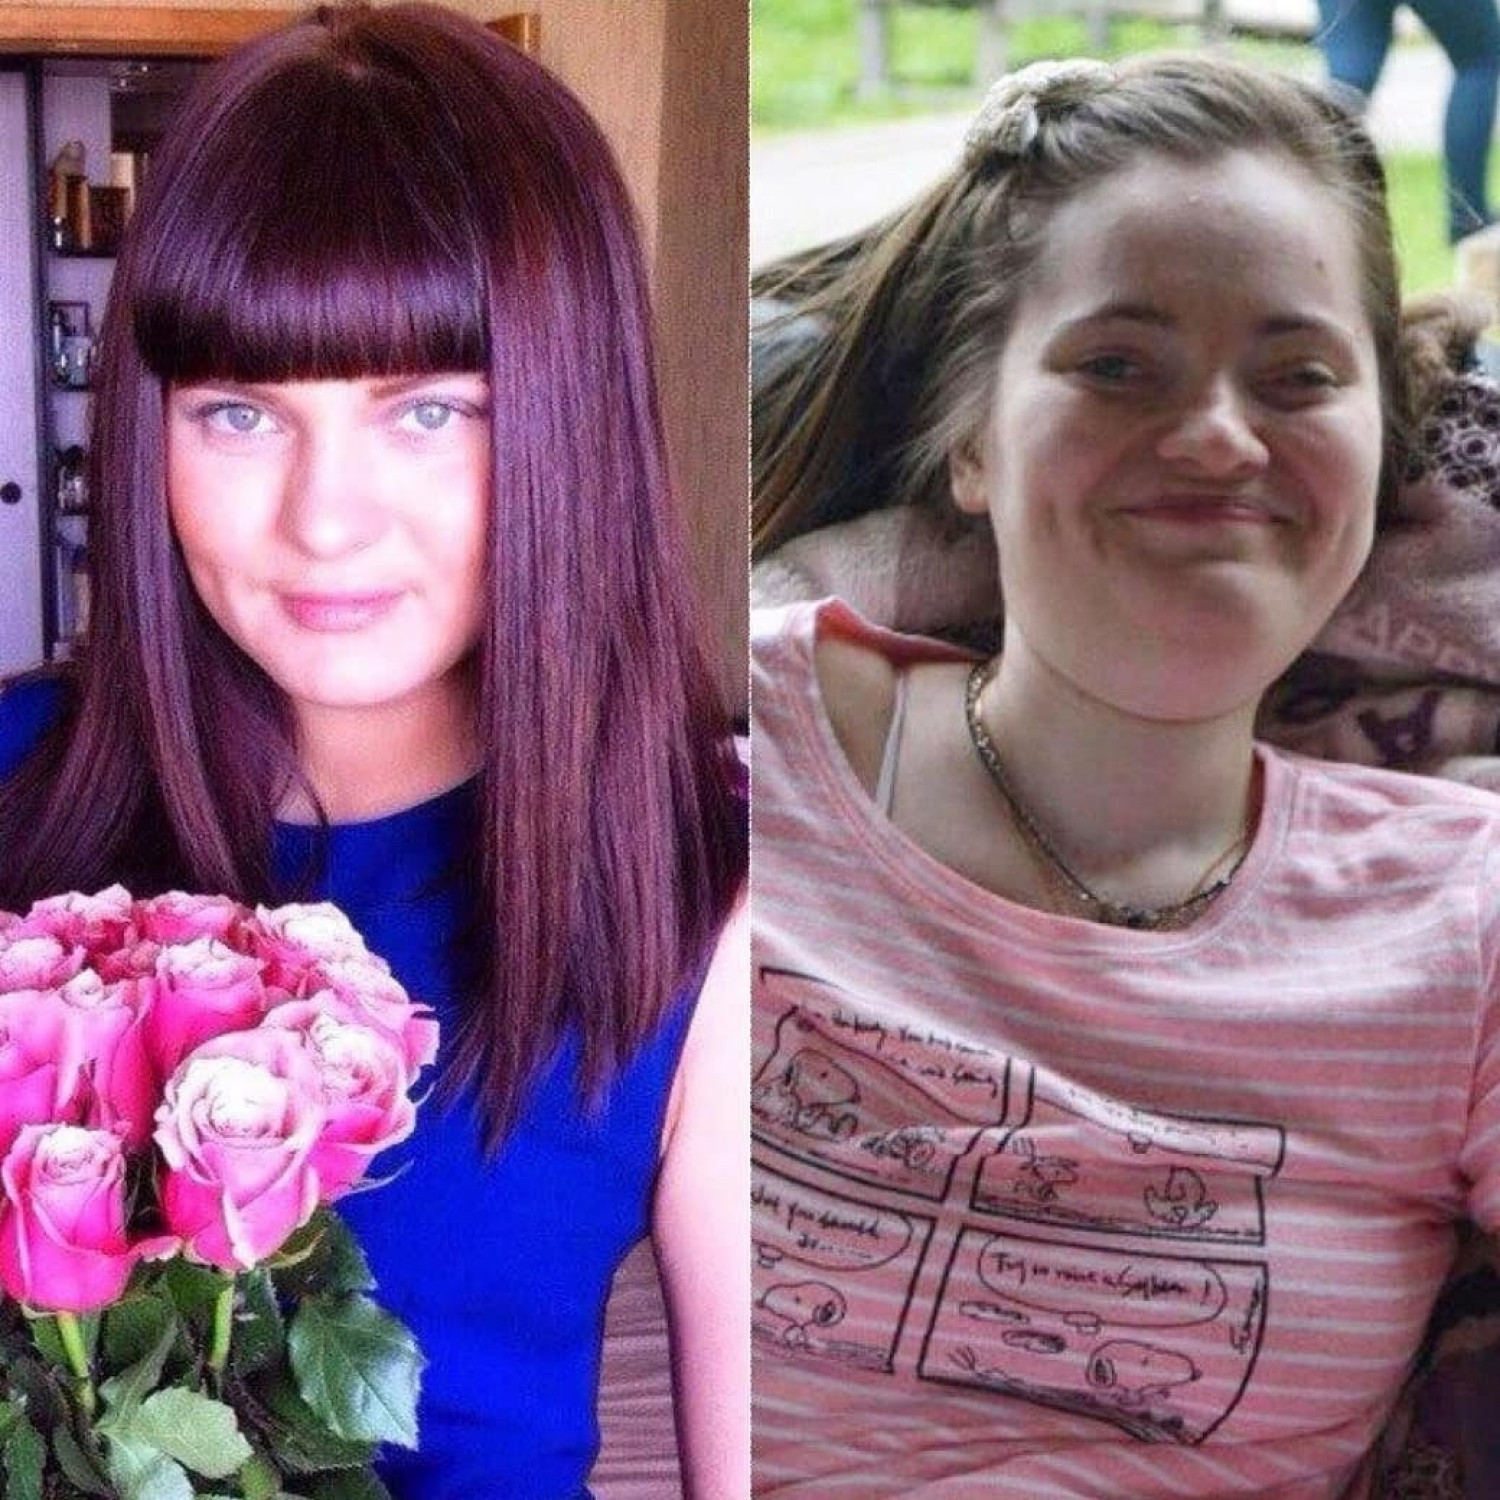 Анастасия до июня 2013 года и после. Фото: Личная страница в соцсетях